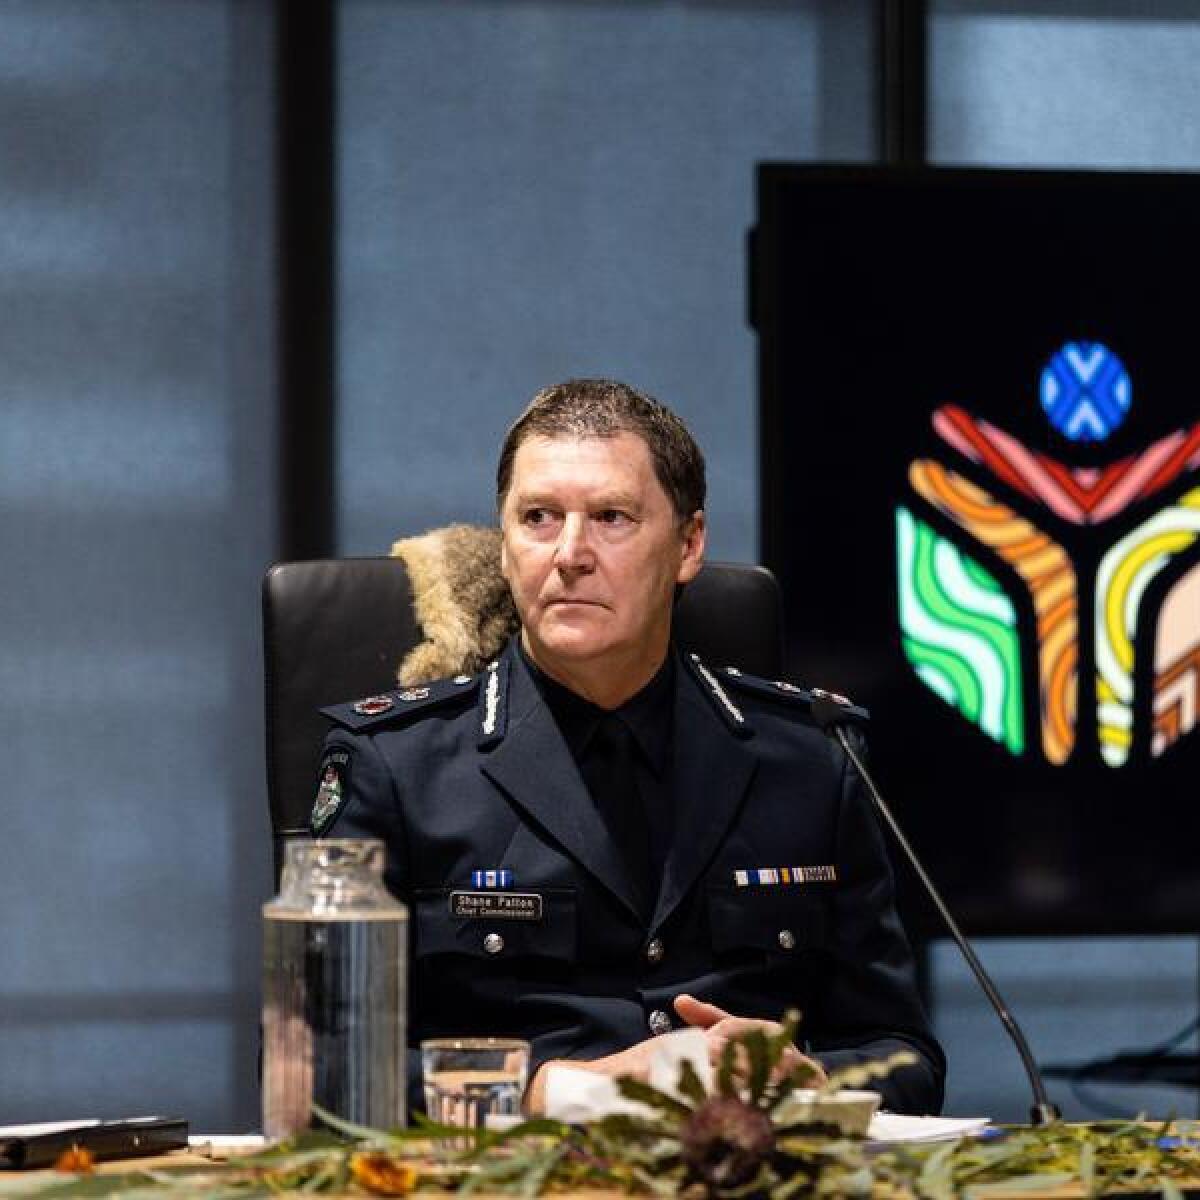 Victoria Police Commissioner Shane Patton.